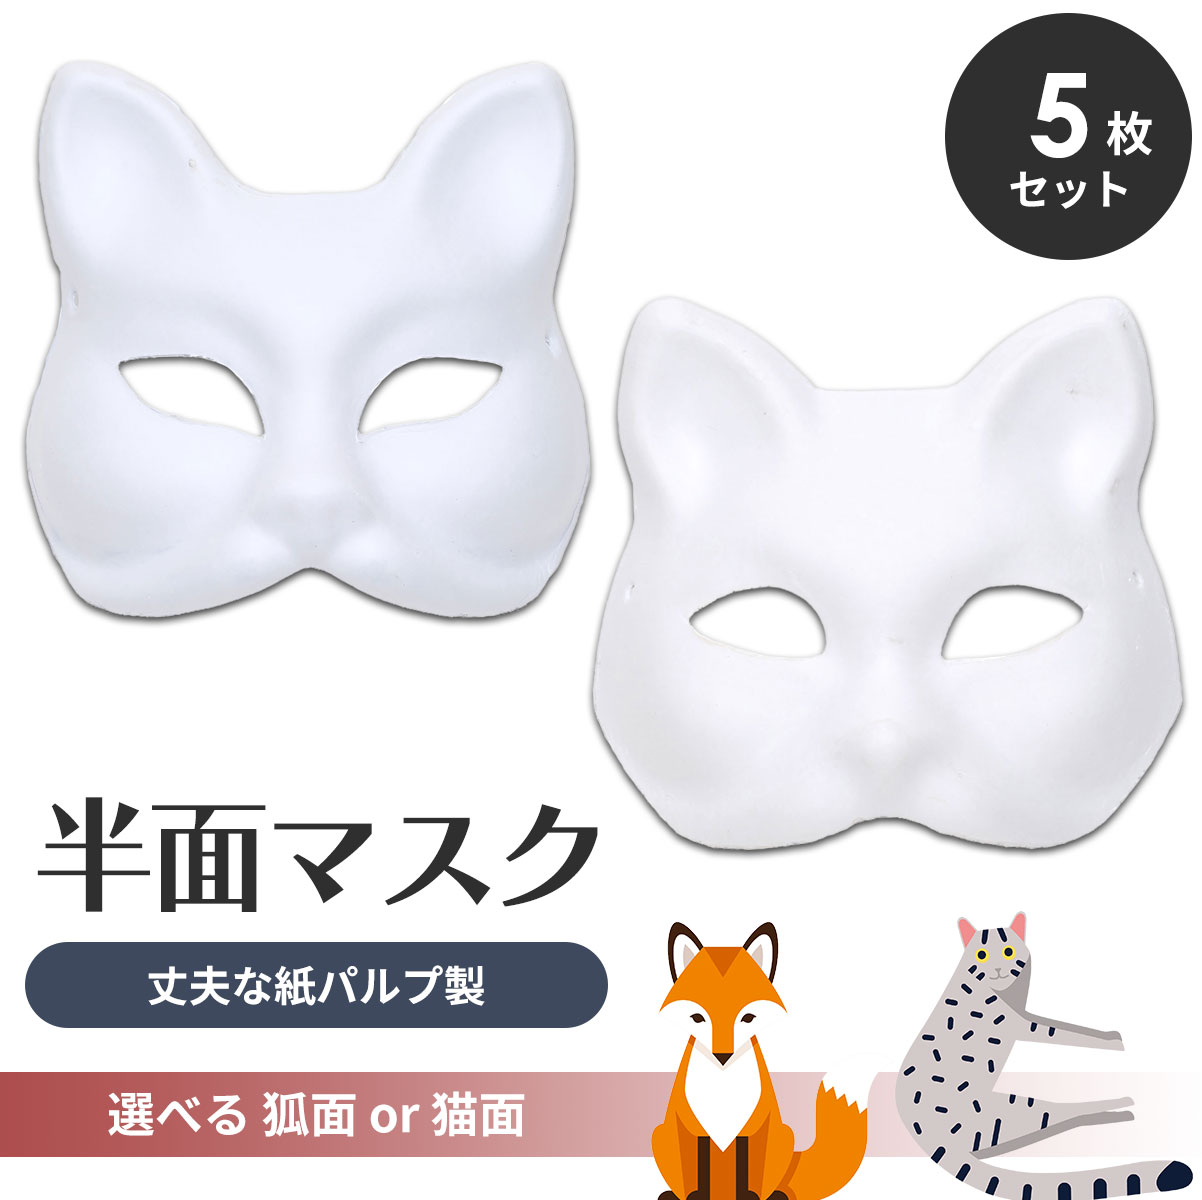 狐面 猫面 お面 狐 猫 マスク コスプレ ペイント 紙パルプ製 半面 5枚セット